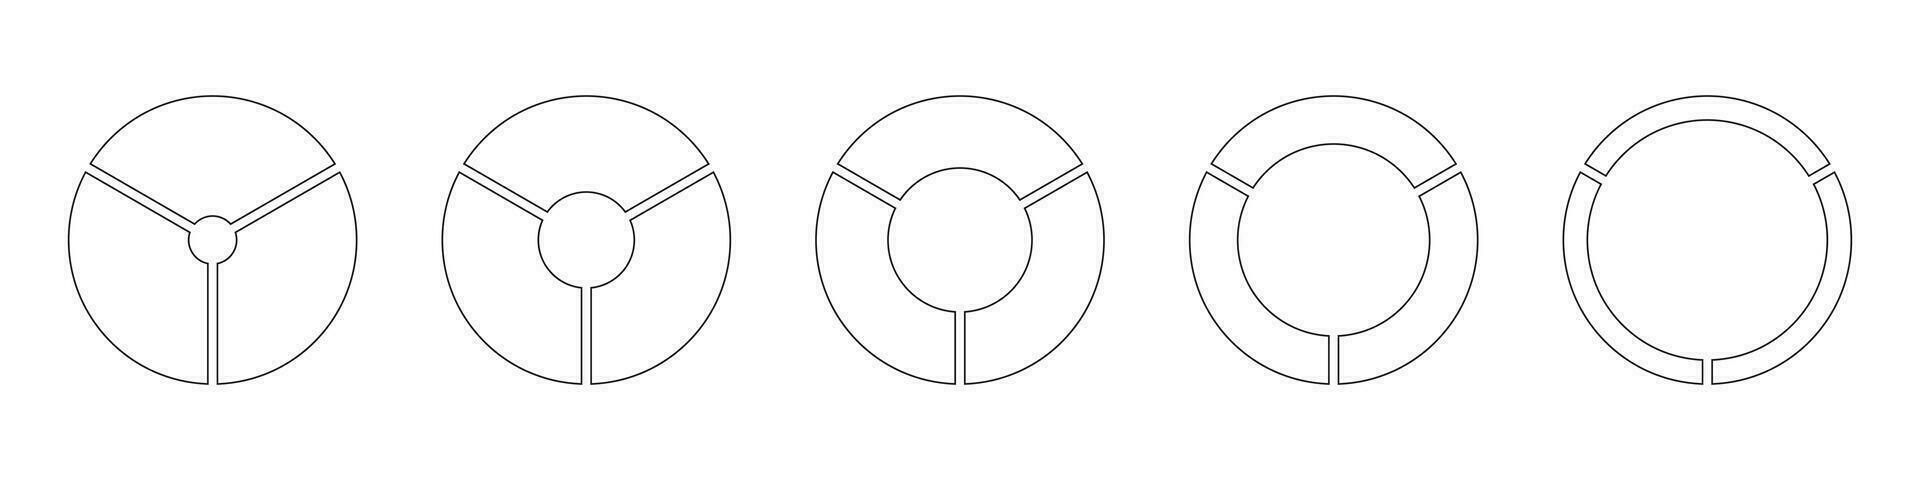 hjul runda dividerat, tre sektioner. diagram infographic uppsättning. cirkel sektion Graf linje konst. paj Diagram enkel ikoner. översikt munk diagram, pajer segmenterad på 3 likvärdig delar. geometrisk vektor element.